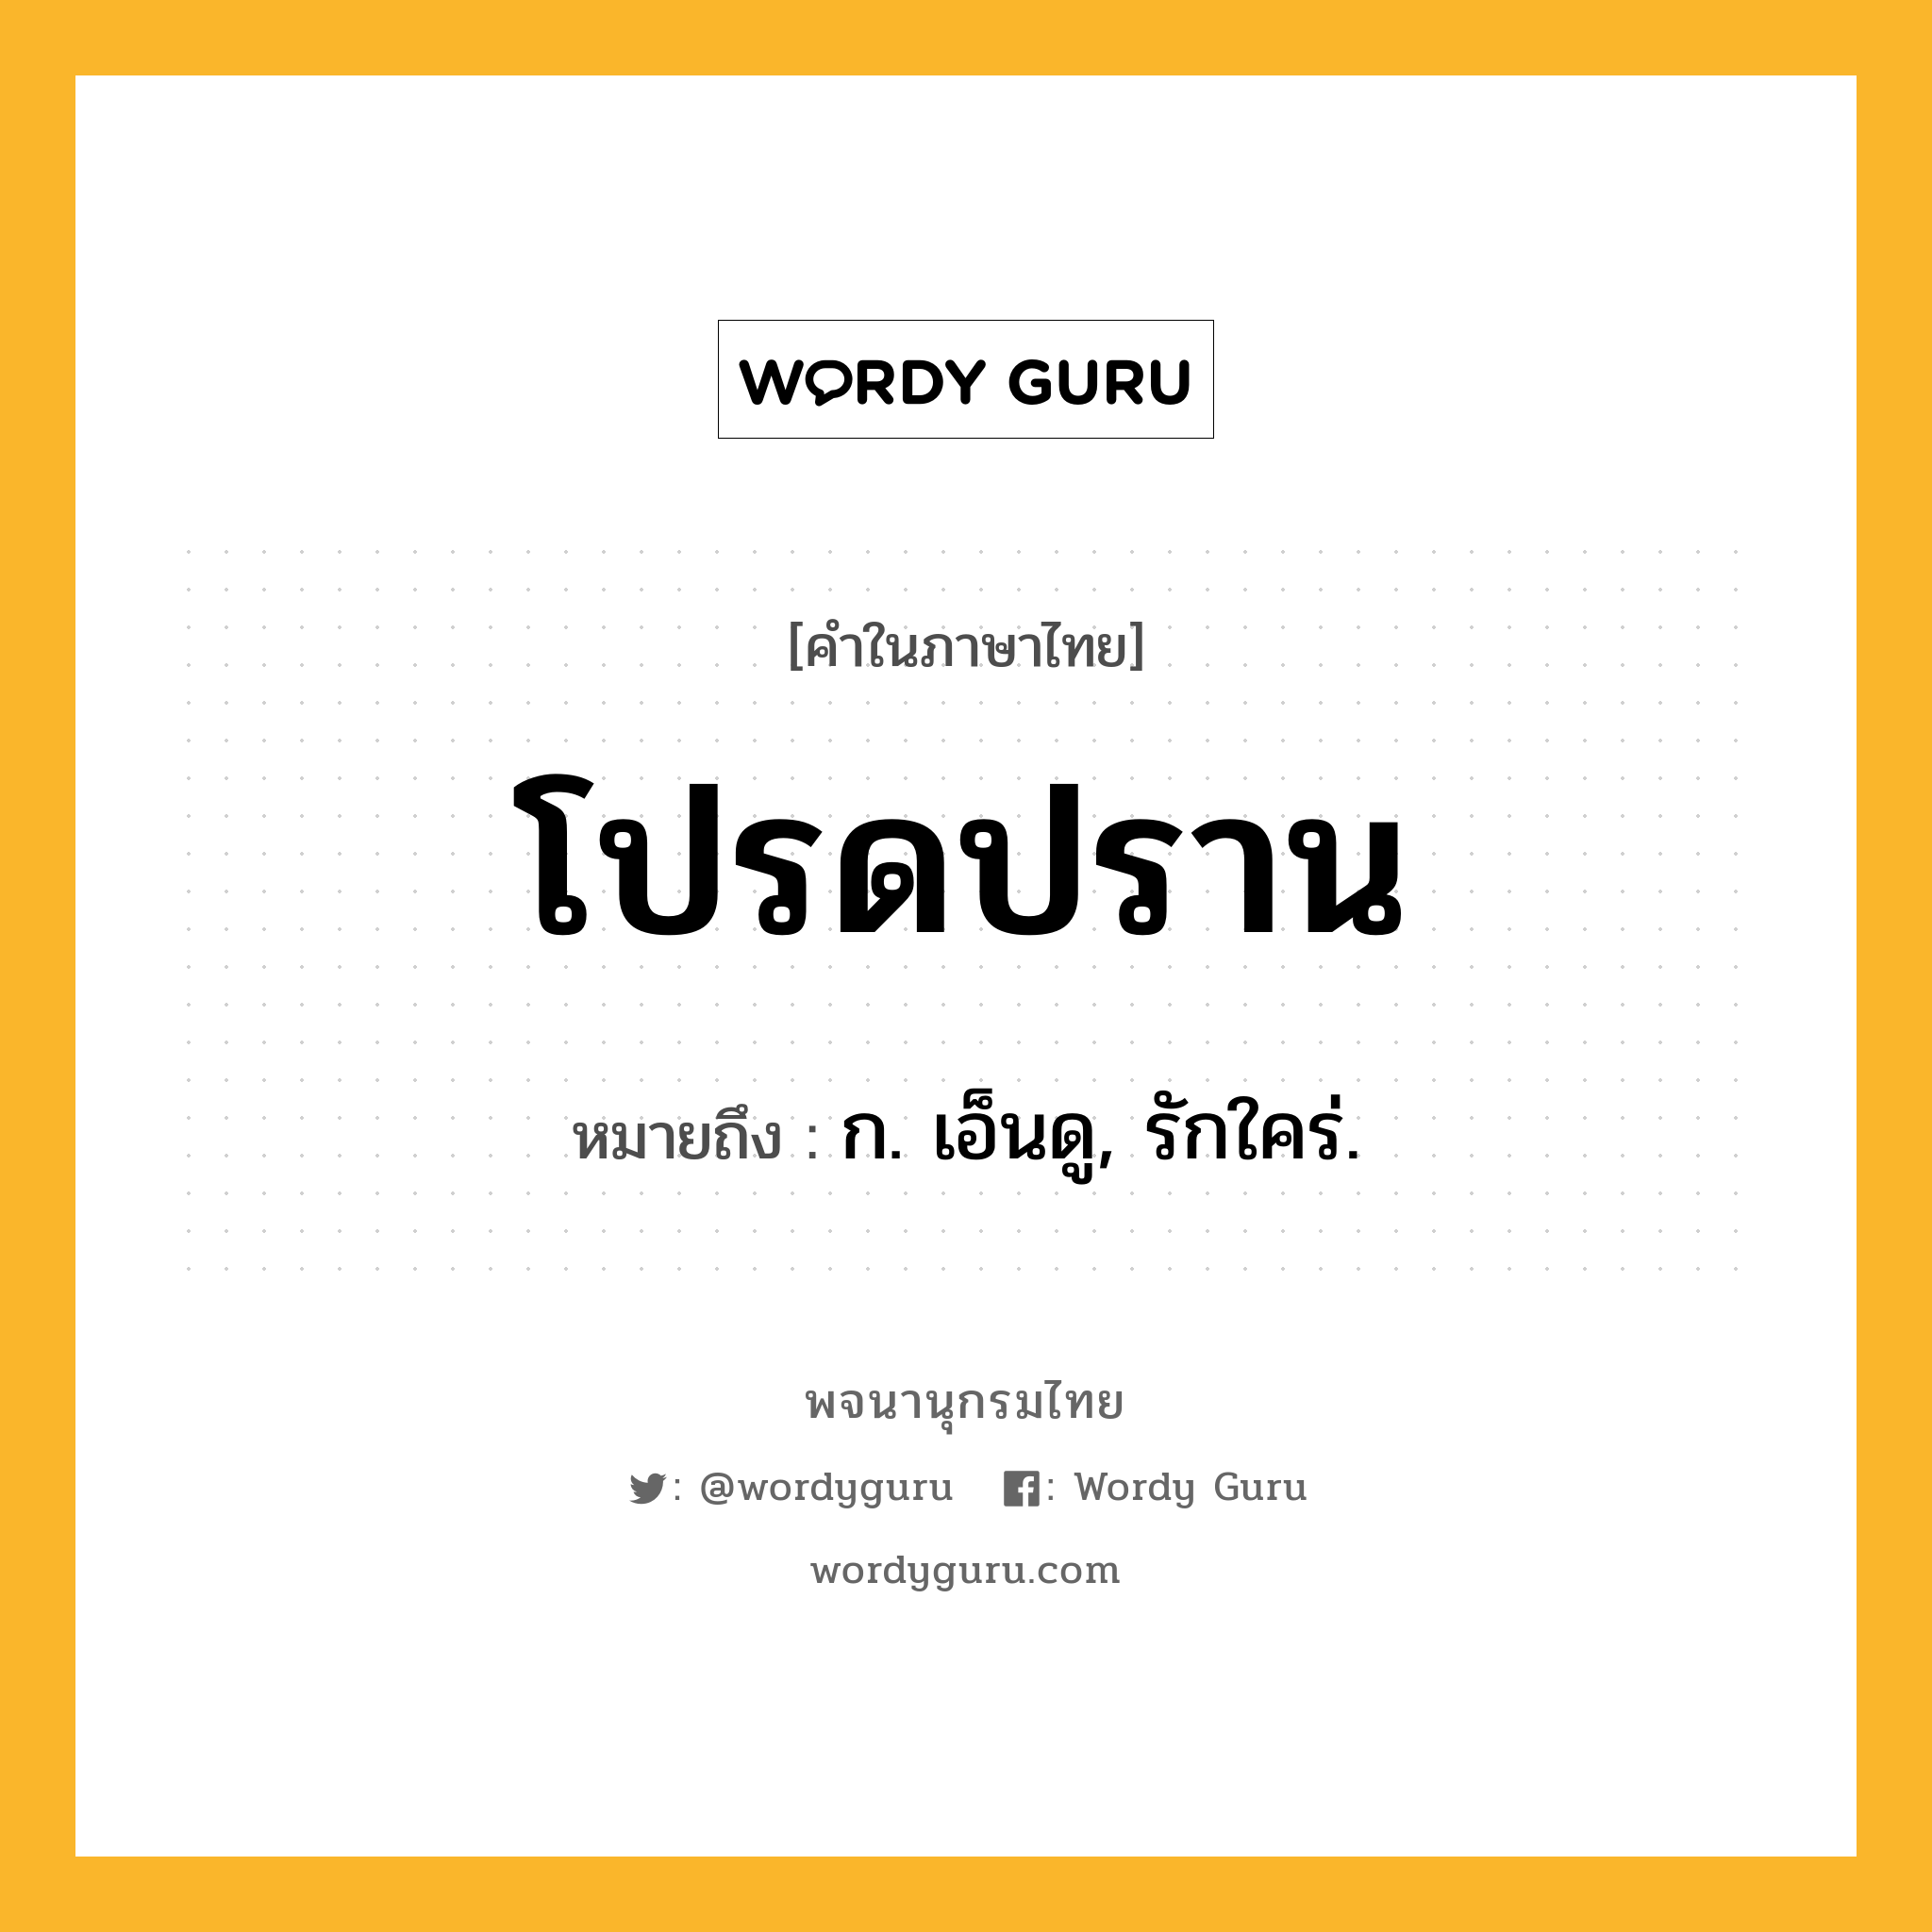 โปรดปราน หมายถึงอะไร?, คำในภาษาไทย โปรดปราน หมายถึง ก. เอ็นดู, รักใคร่.